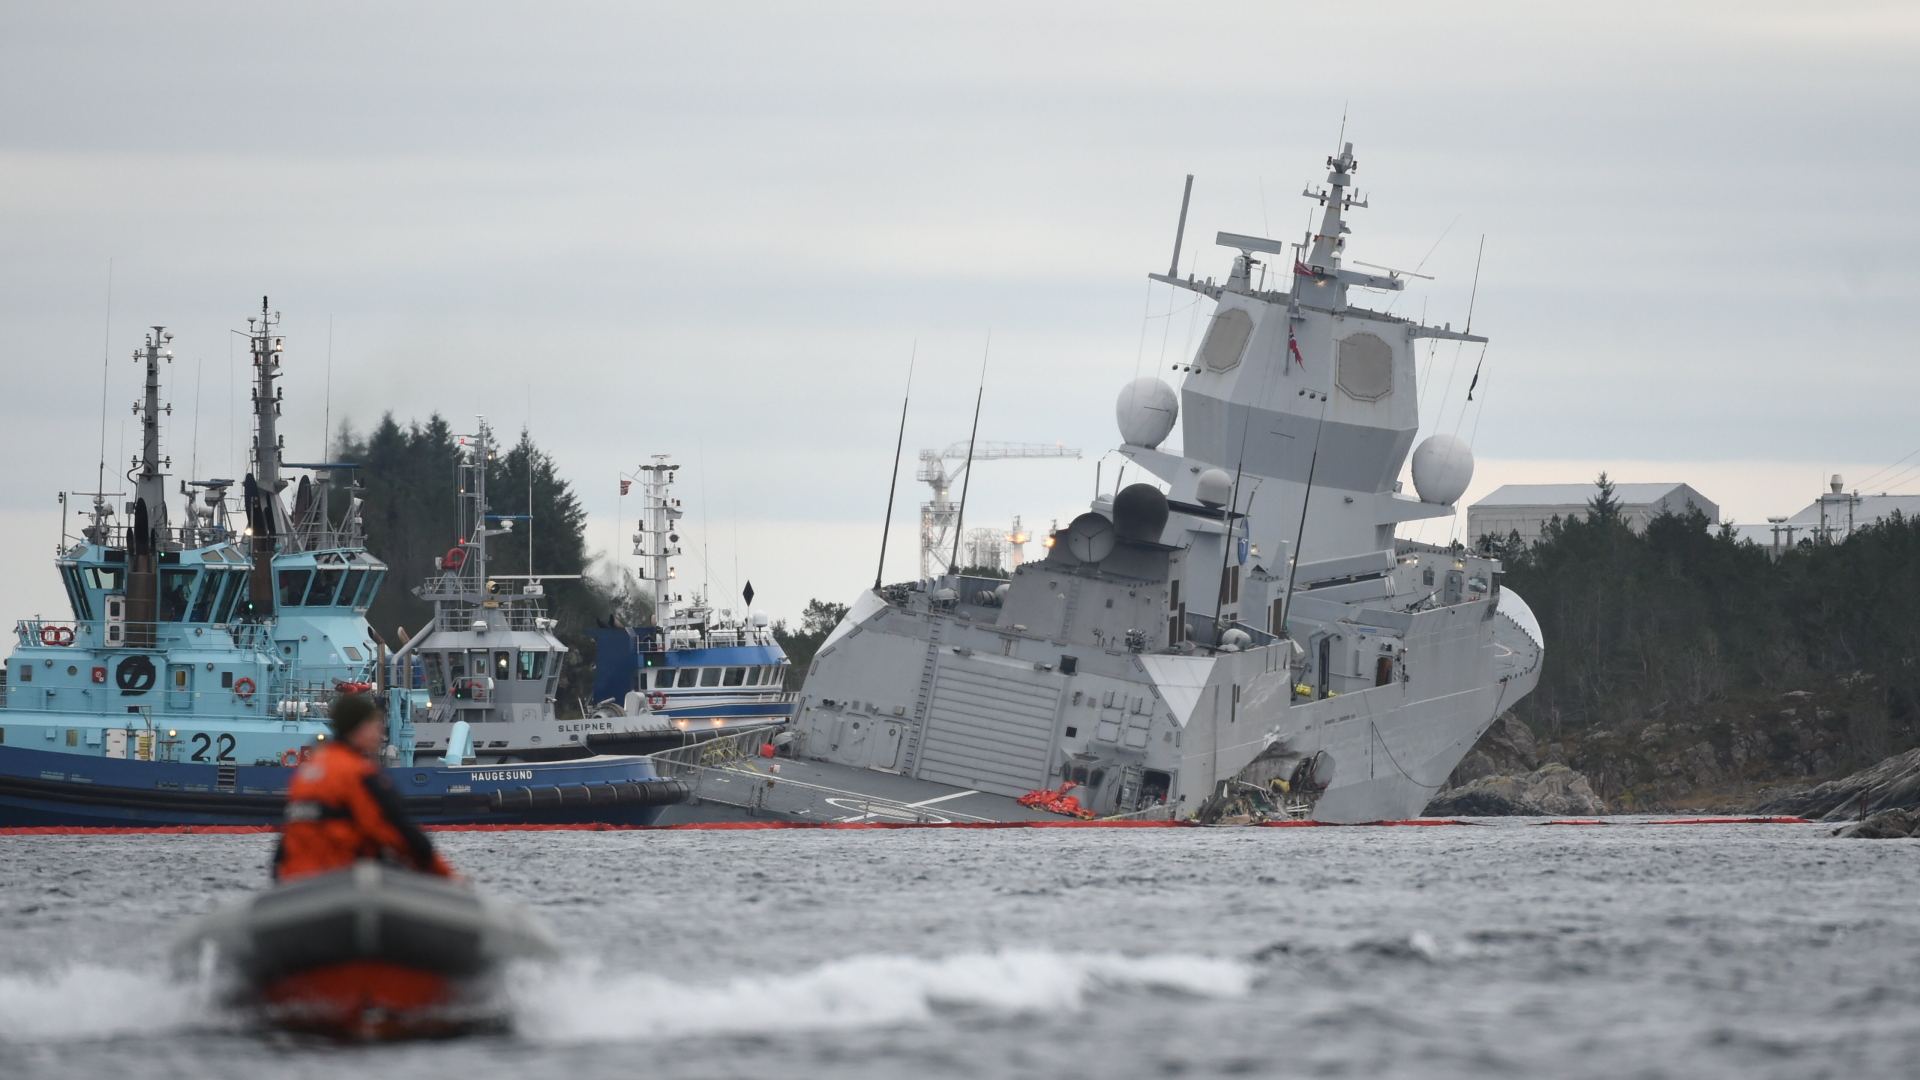 Wasser strömt ins Innere der norwegischen Fregatte, die mit einem Tanker kollidiert war. | Bildquelle: MARIT HOMMEDAL/EPA-EFE/REX/Shutt